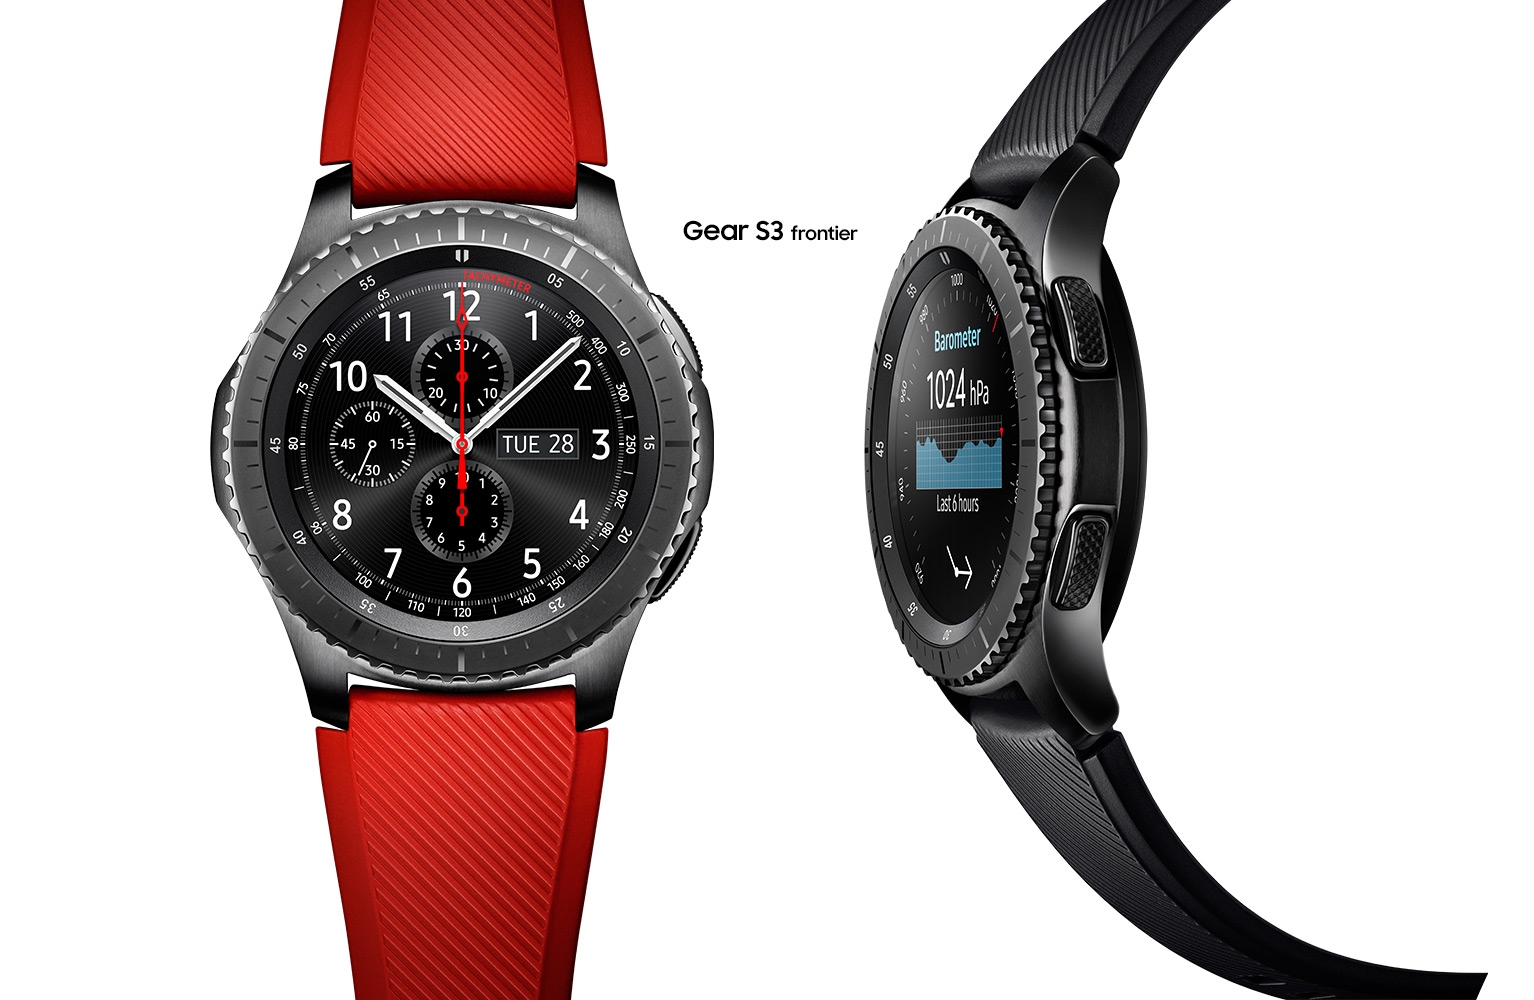 samsung smartwatch g3 frontier